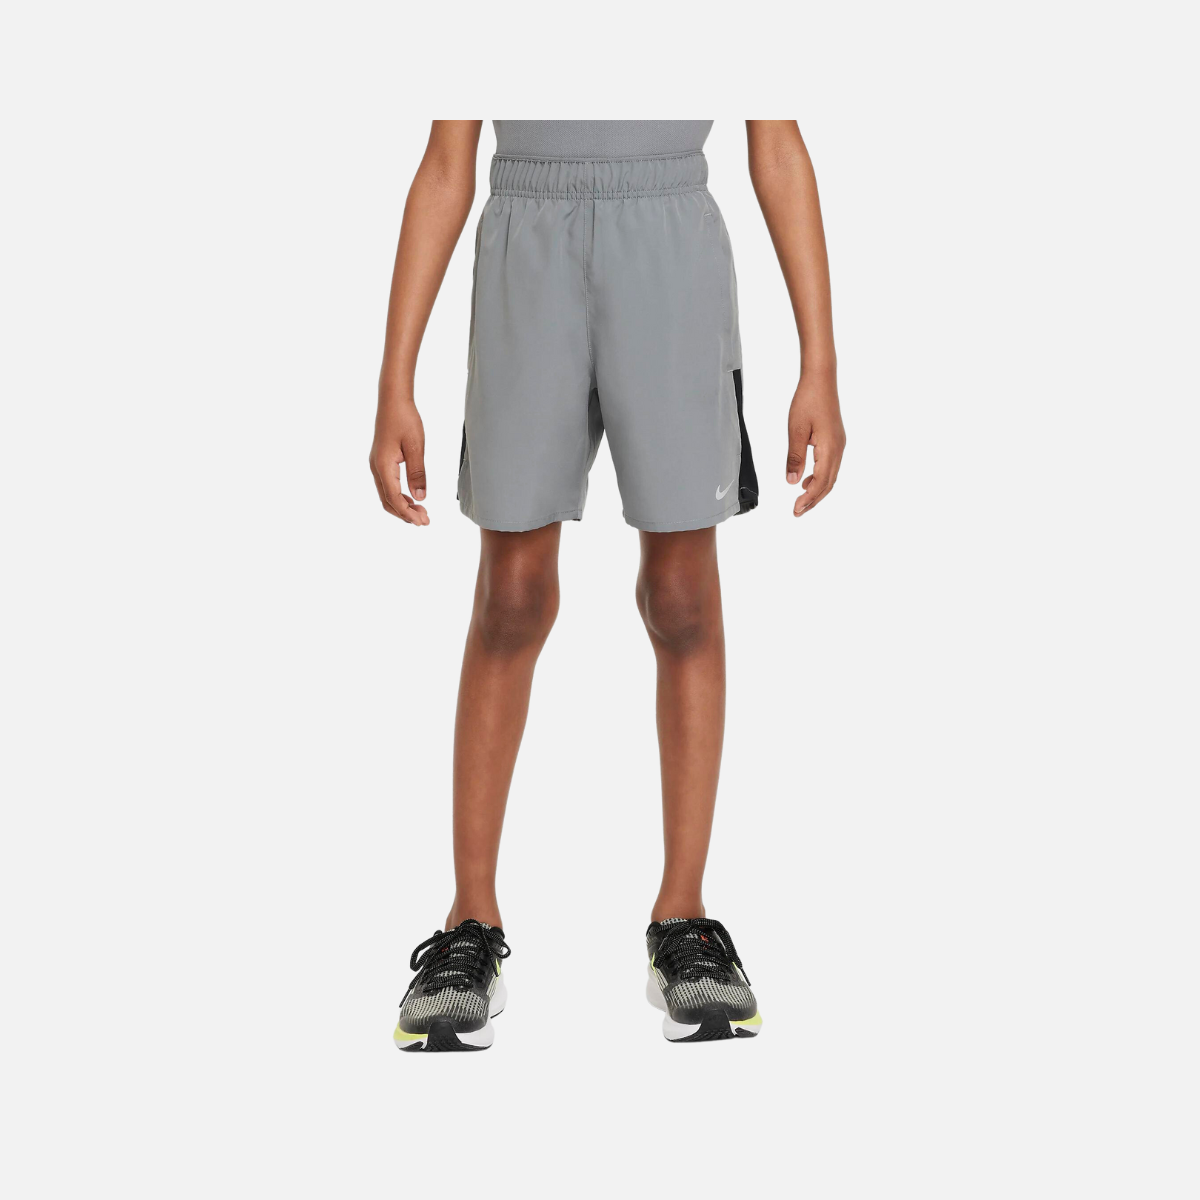 Nike Dri-FIT Challenger Older Kids Training Shorts -Smoke Grey/Black